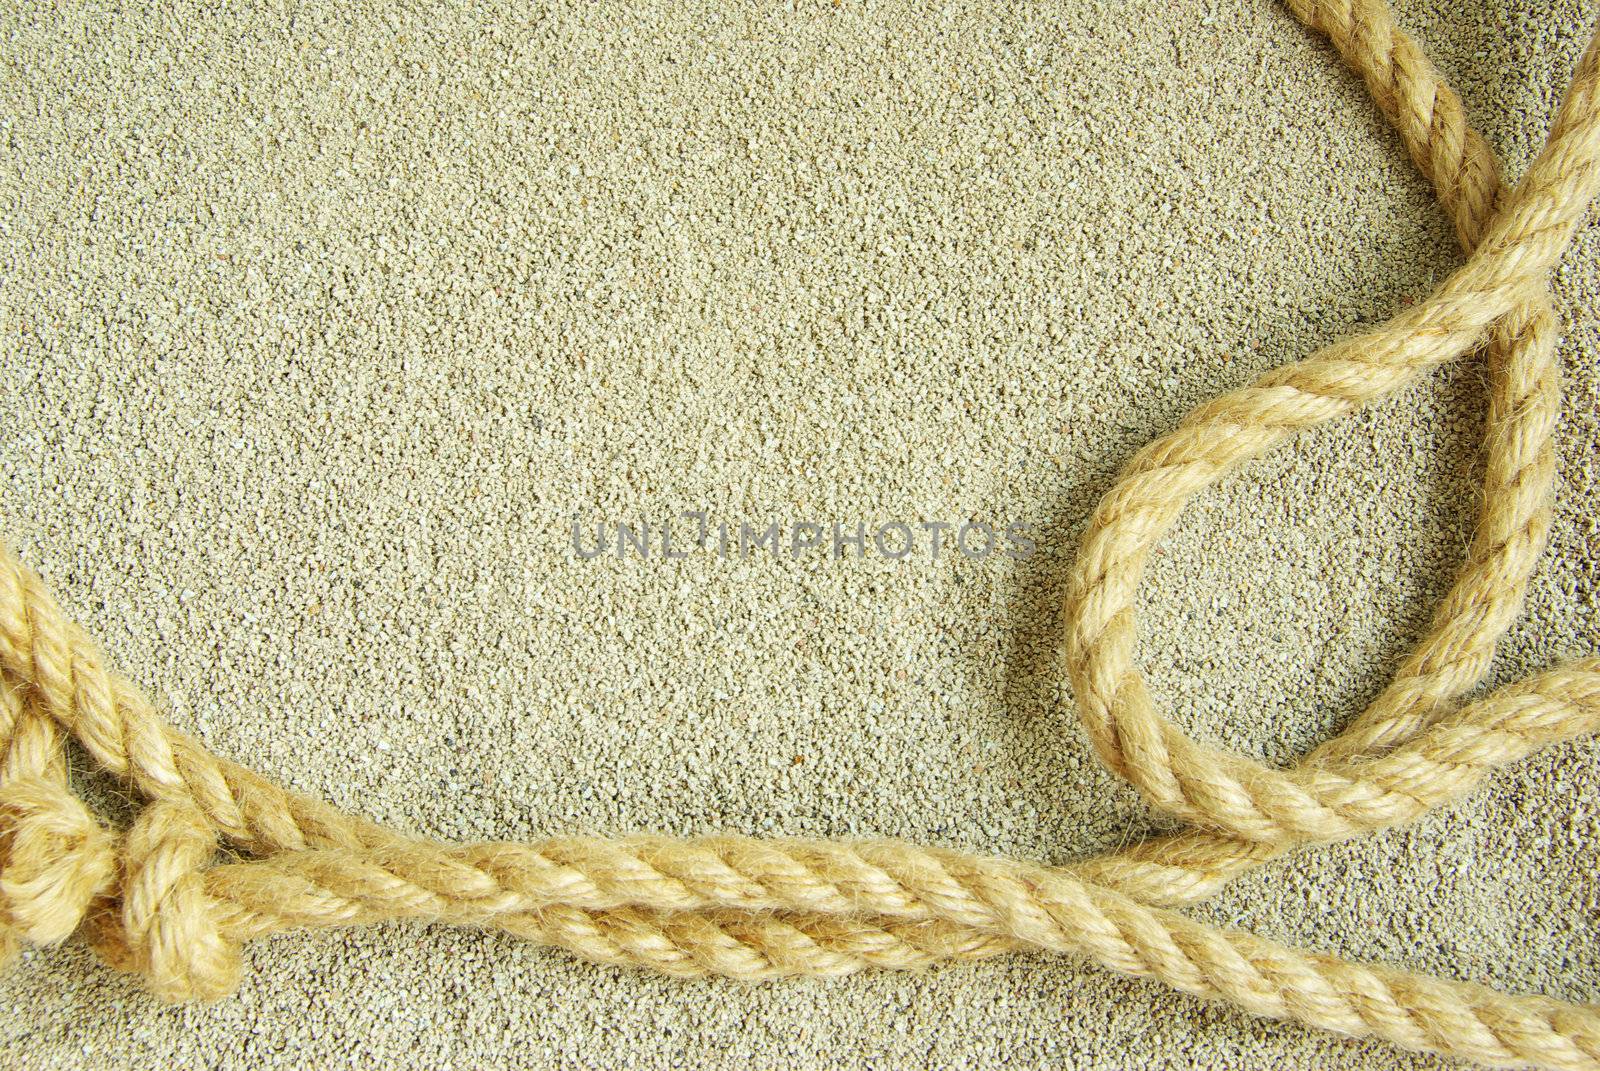  rope on sand by Pakhnyushchyy